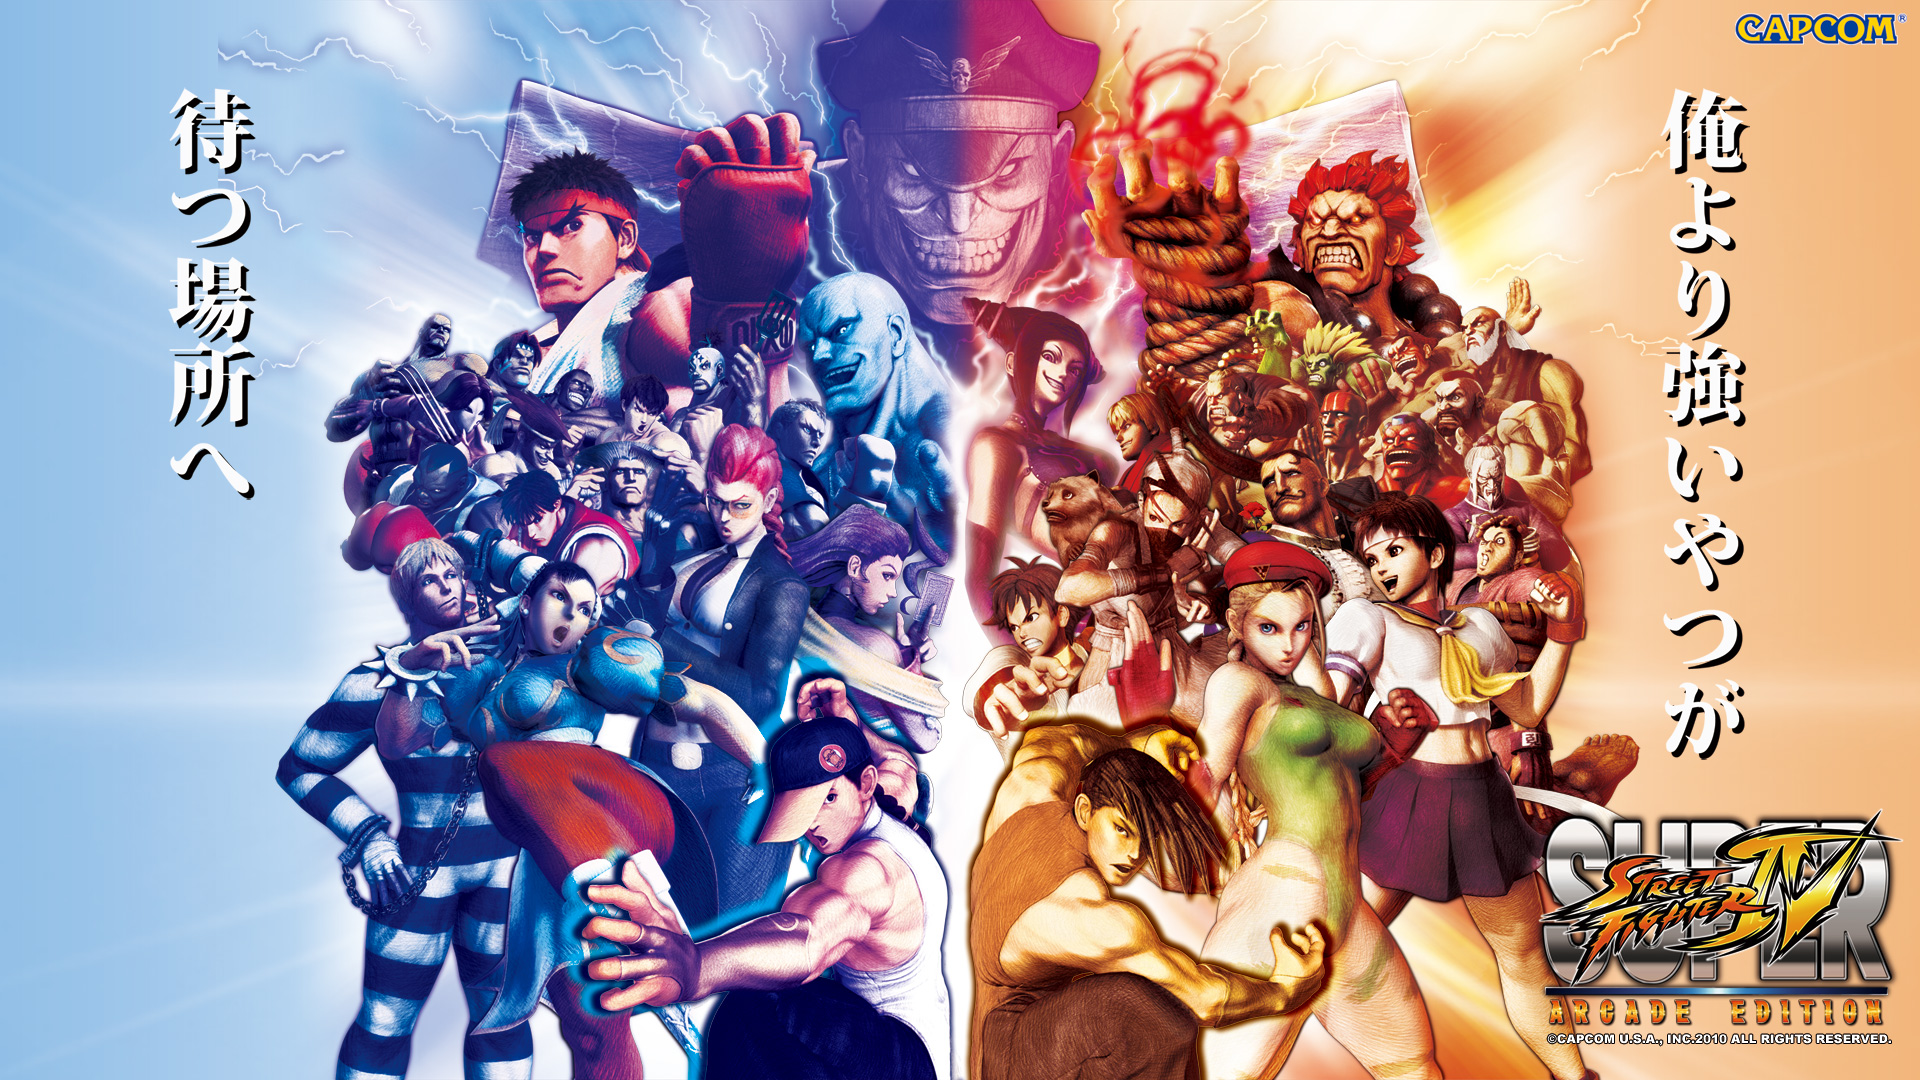 Super Street Fighter IV #16